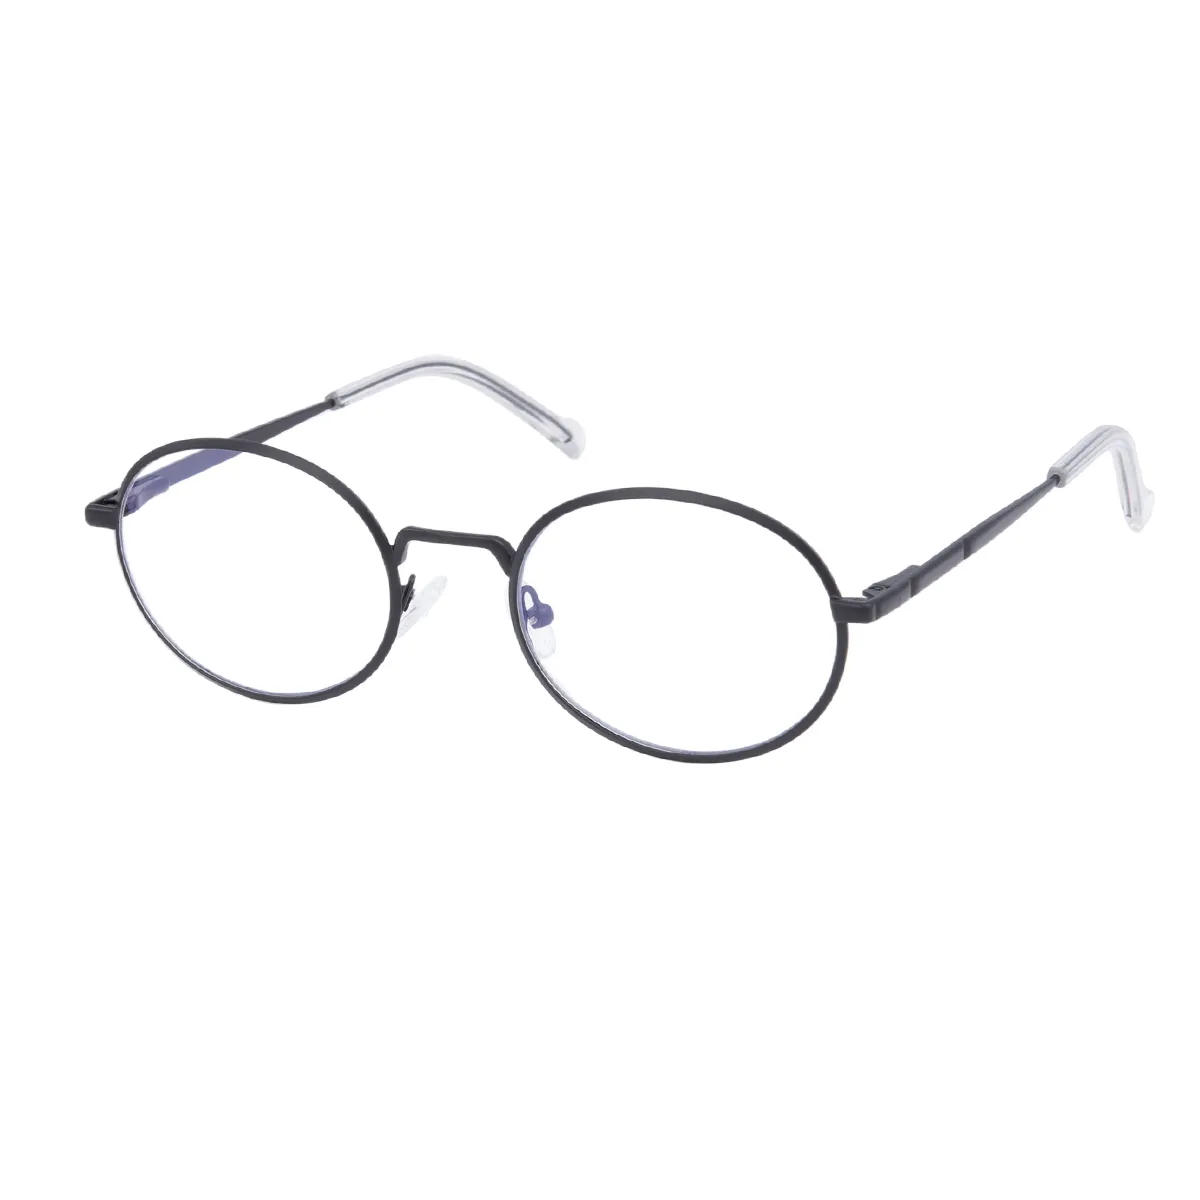 Hulda - Oval Black Glasses for Men & Women - EFE